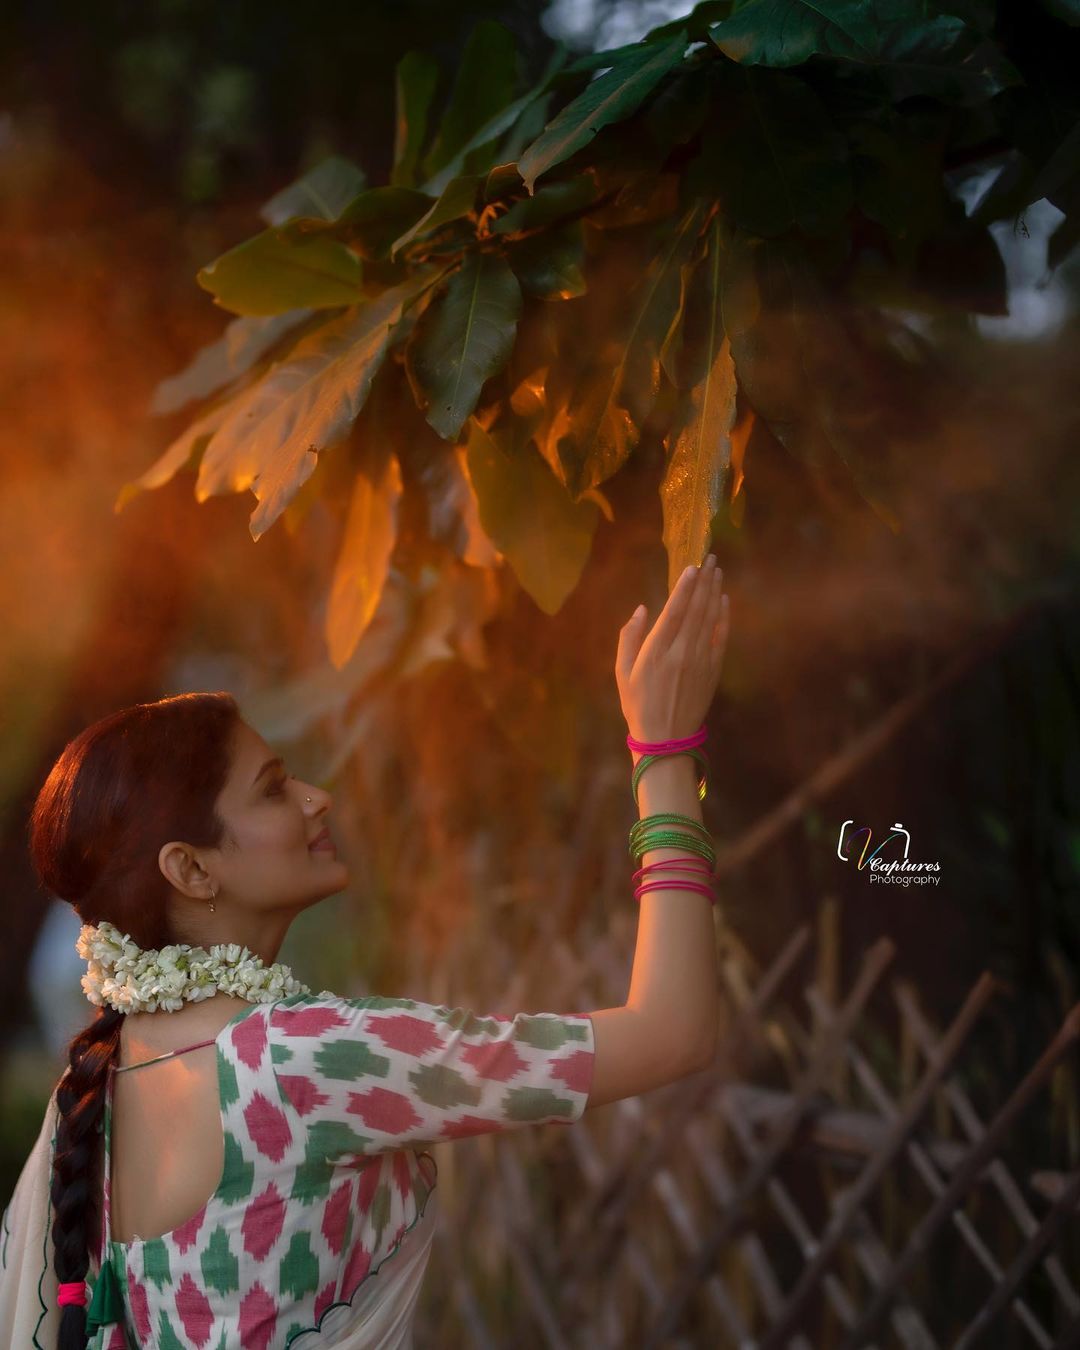  நடிகை பிரியாமணி ( Image : Instagram @pillumani)